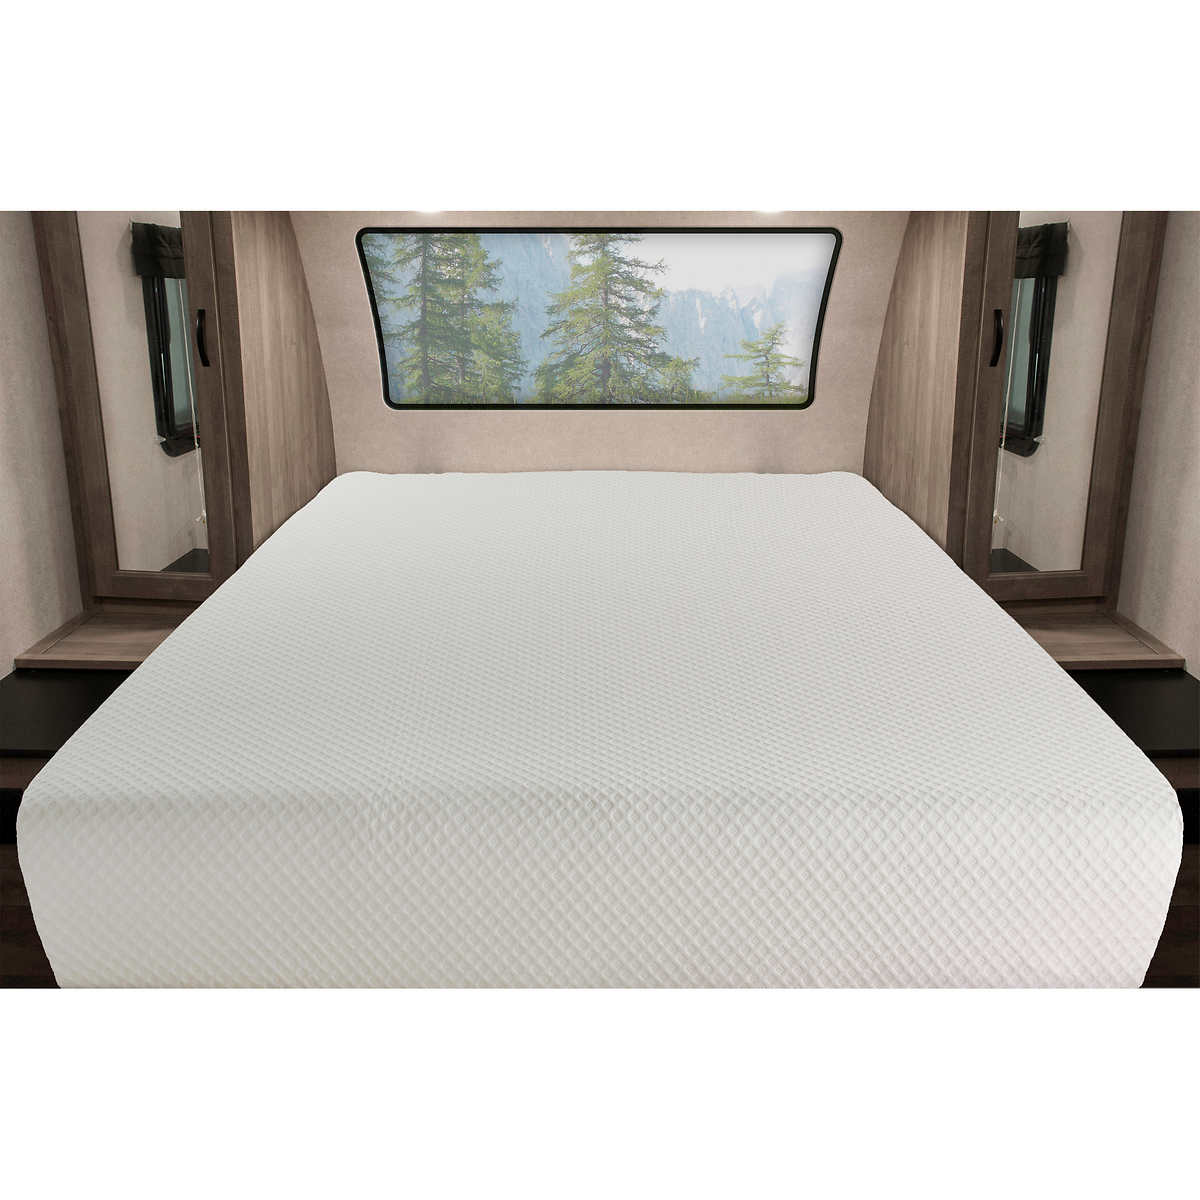 10 Serene Medium Foam Rv Mattress Costco, Rv Adjustable Bed Frame